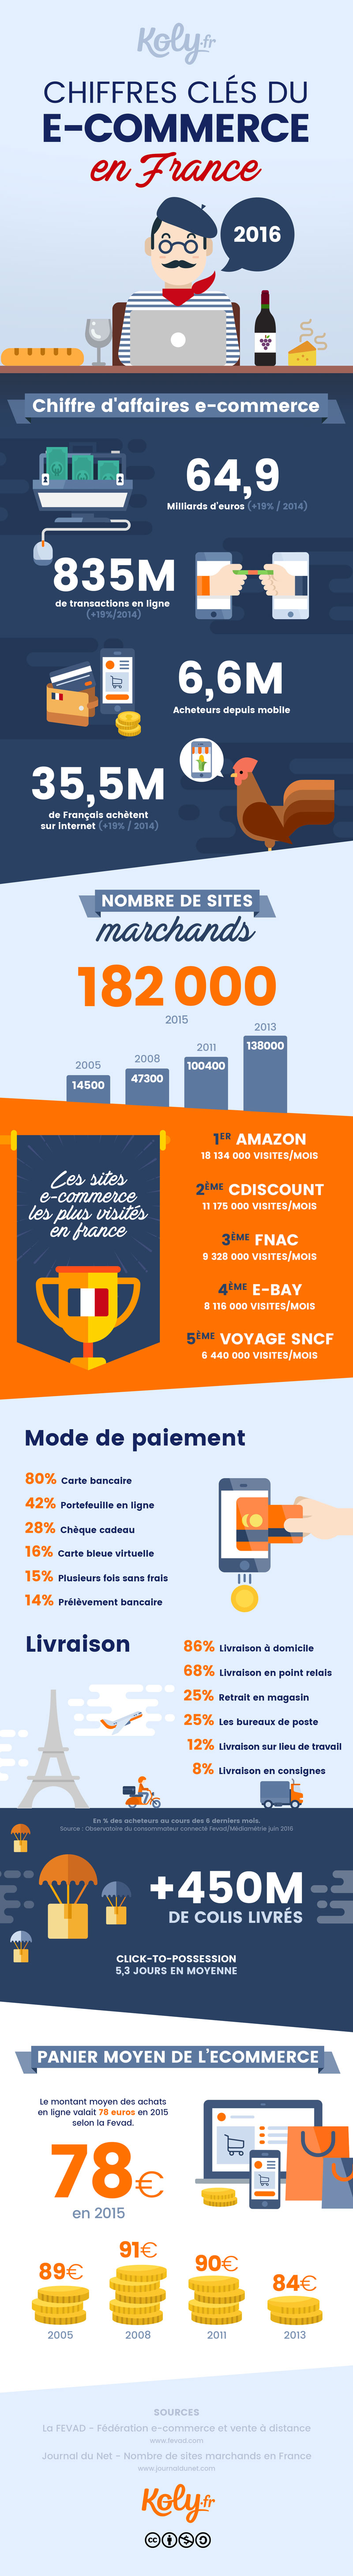 Chiffres clés du e-commerce en France en 2016. Une infographie Koly.